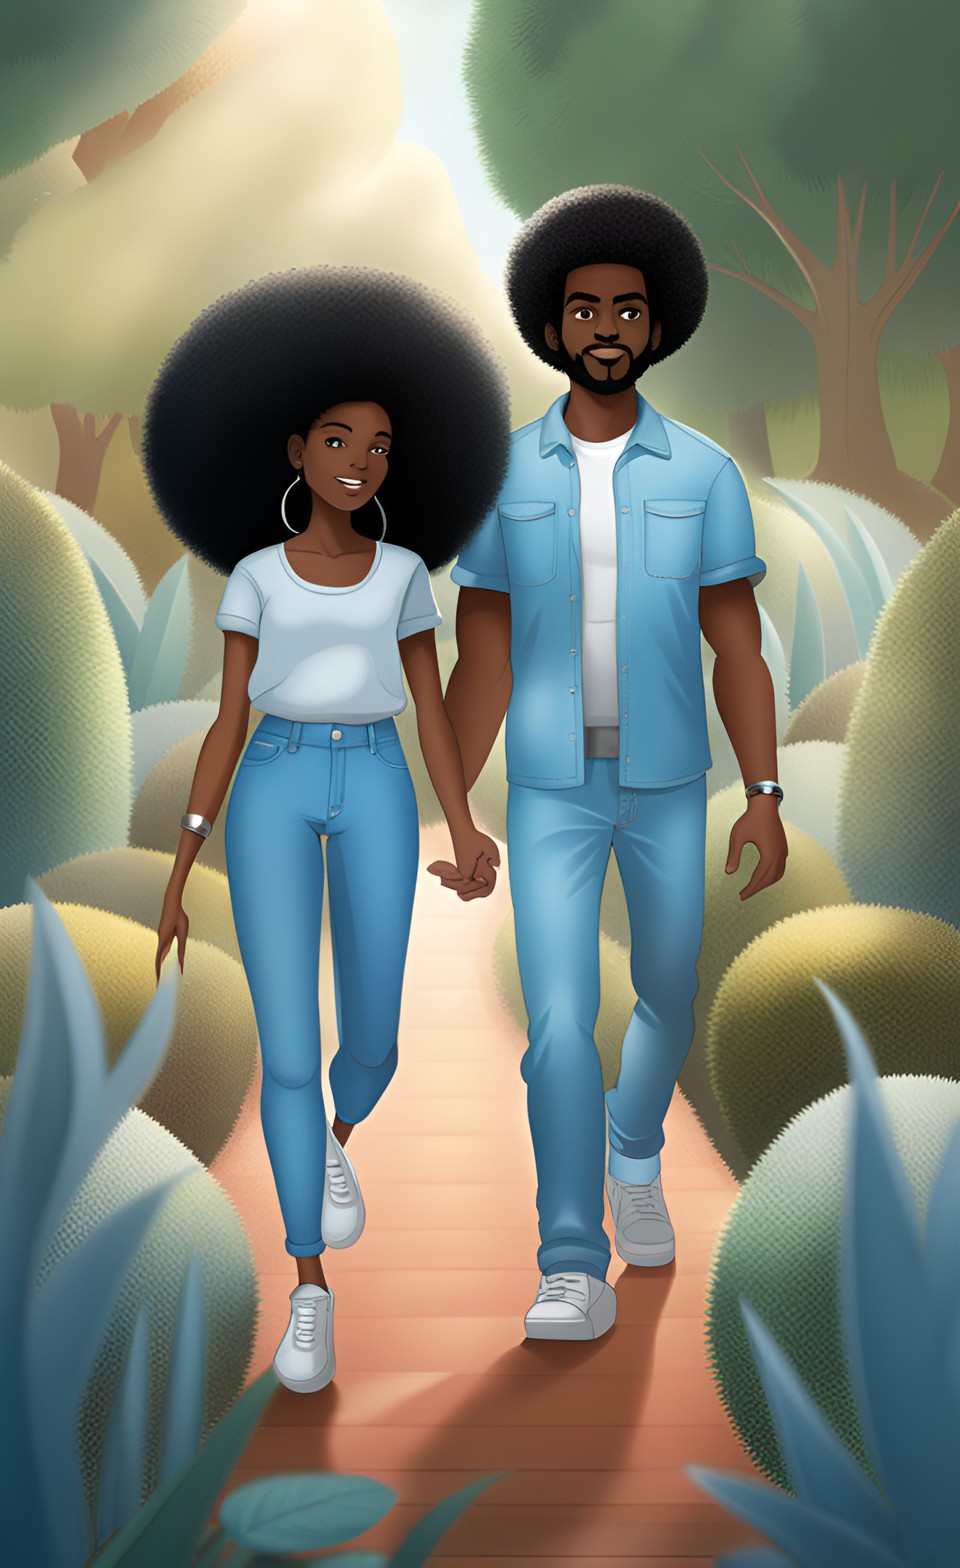 Jamaican anime couple walking in a garden Dream_16